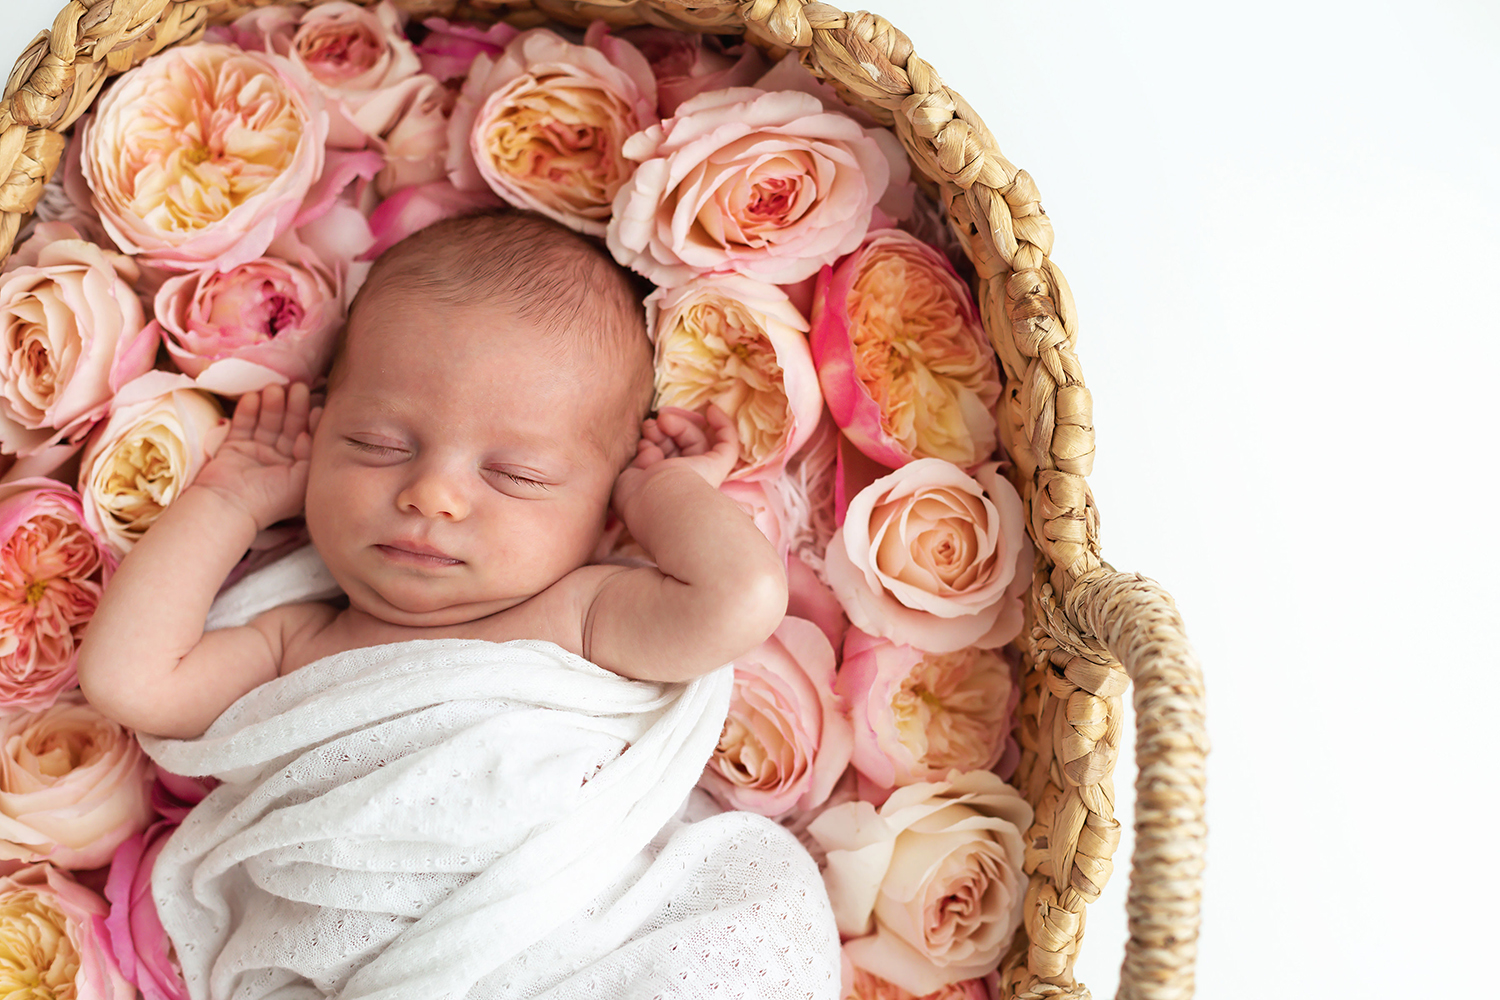 Séance photo bébé avec David Austin Roses